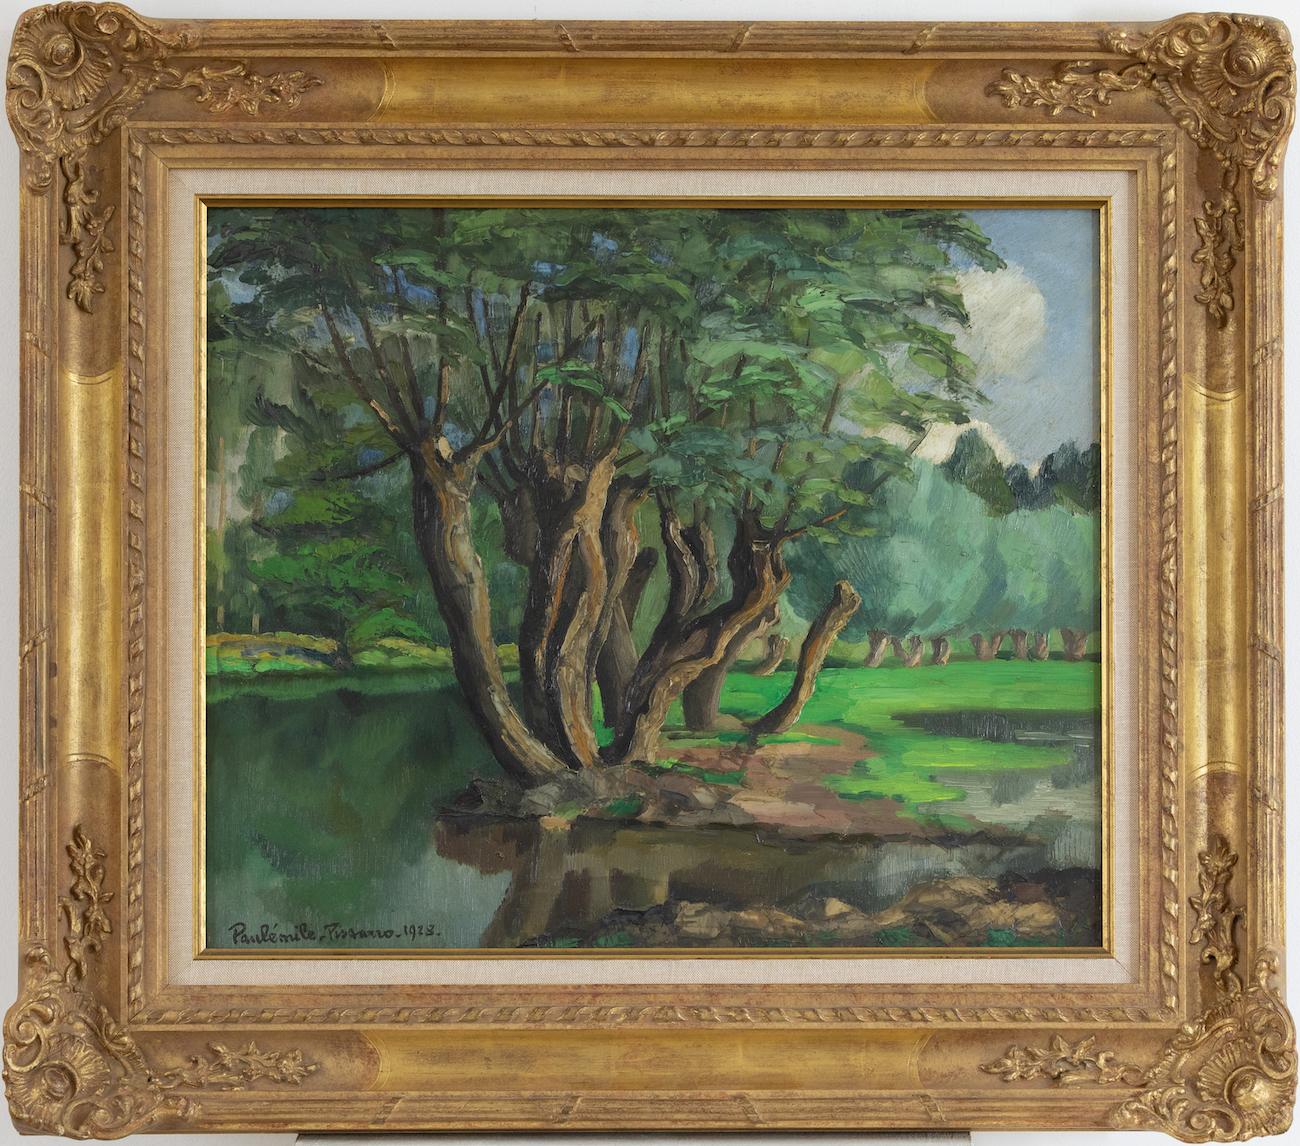 L'Arbre au Bord de l'Eau by Paulémile Pissarro - Post-Impressionist river scene - Painting by Paul Emile Pissarro